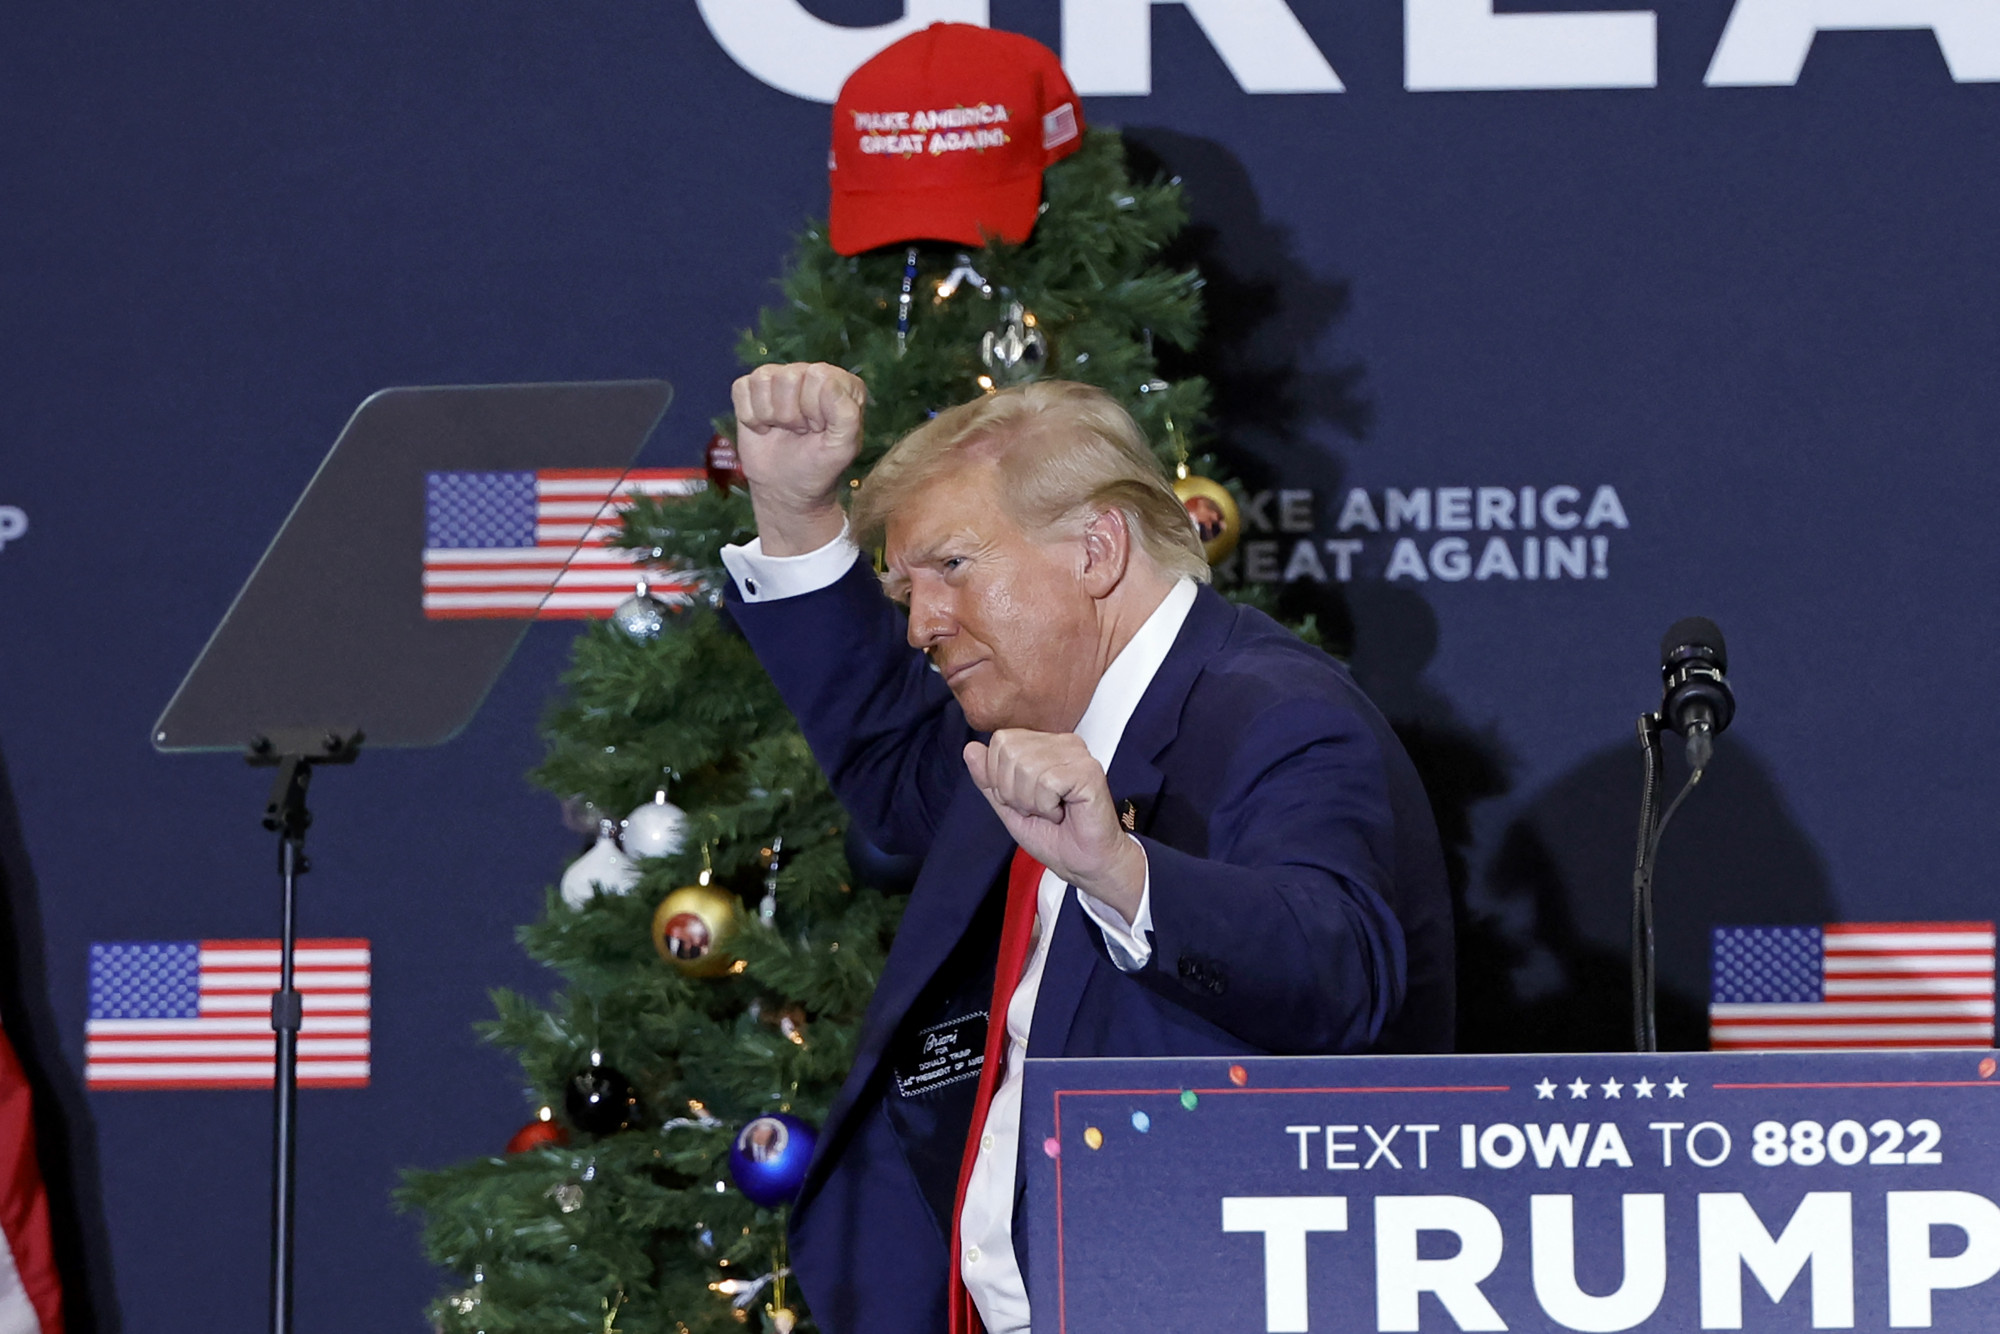 Rohadjatok meg a pokolban! – így szólt Donald Trump karácsonyi üdvözlete